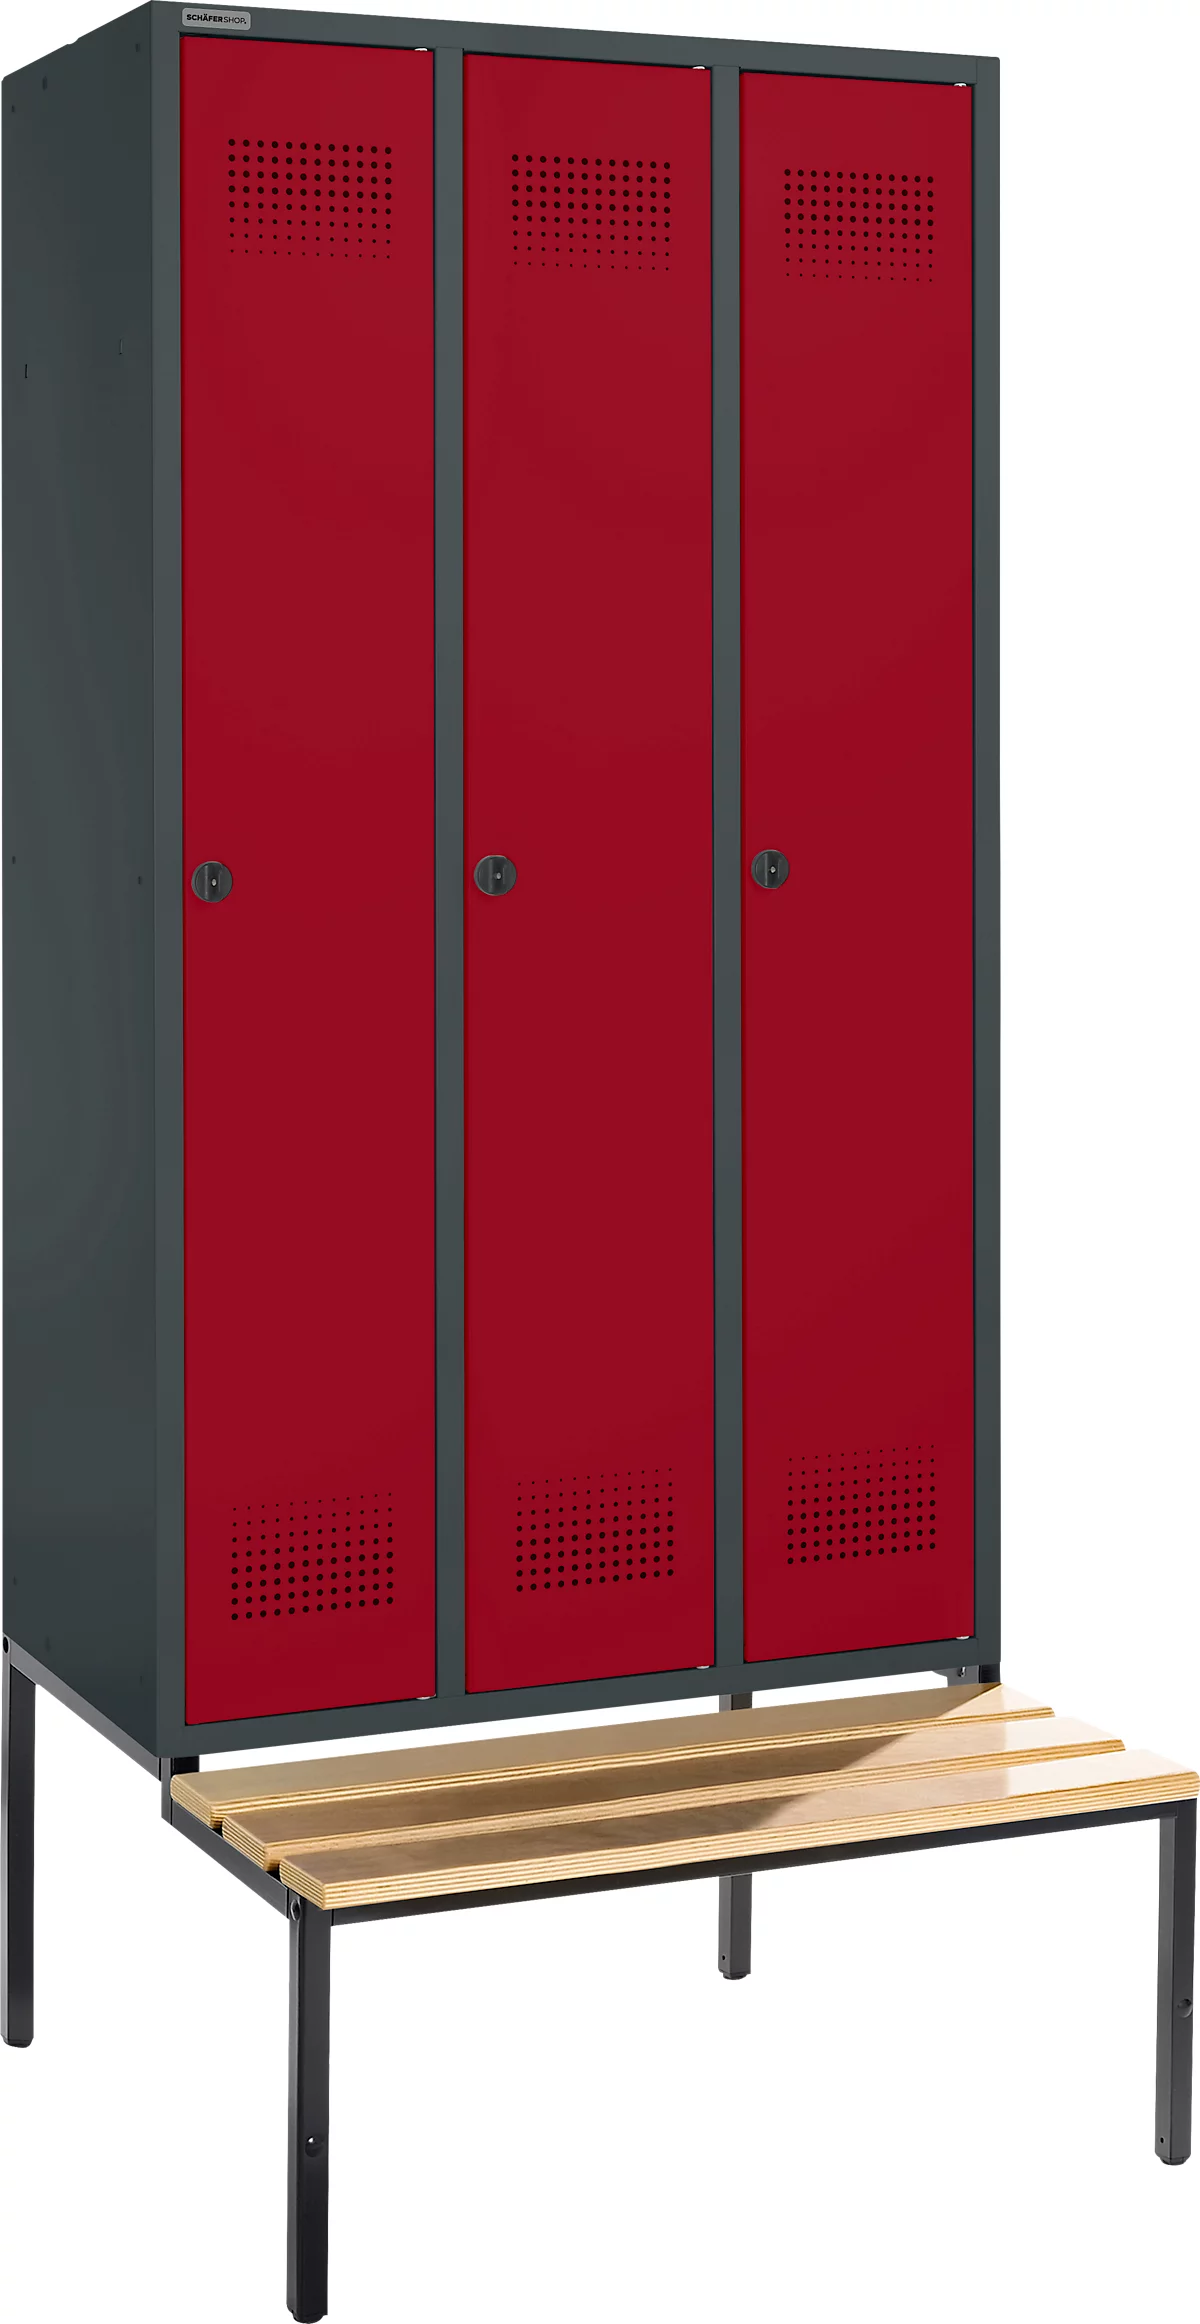 Schäfer Shop Genius Taquilla con banco, 3 compartimentos, anchura compartimento 300 mm, cierre de pasador giratorio de seguridad, antracita/rojo rubí